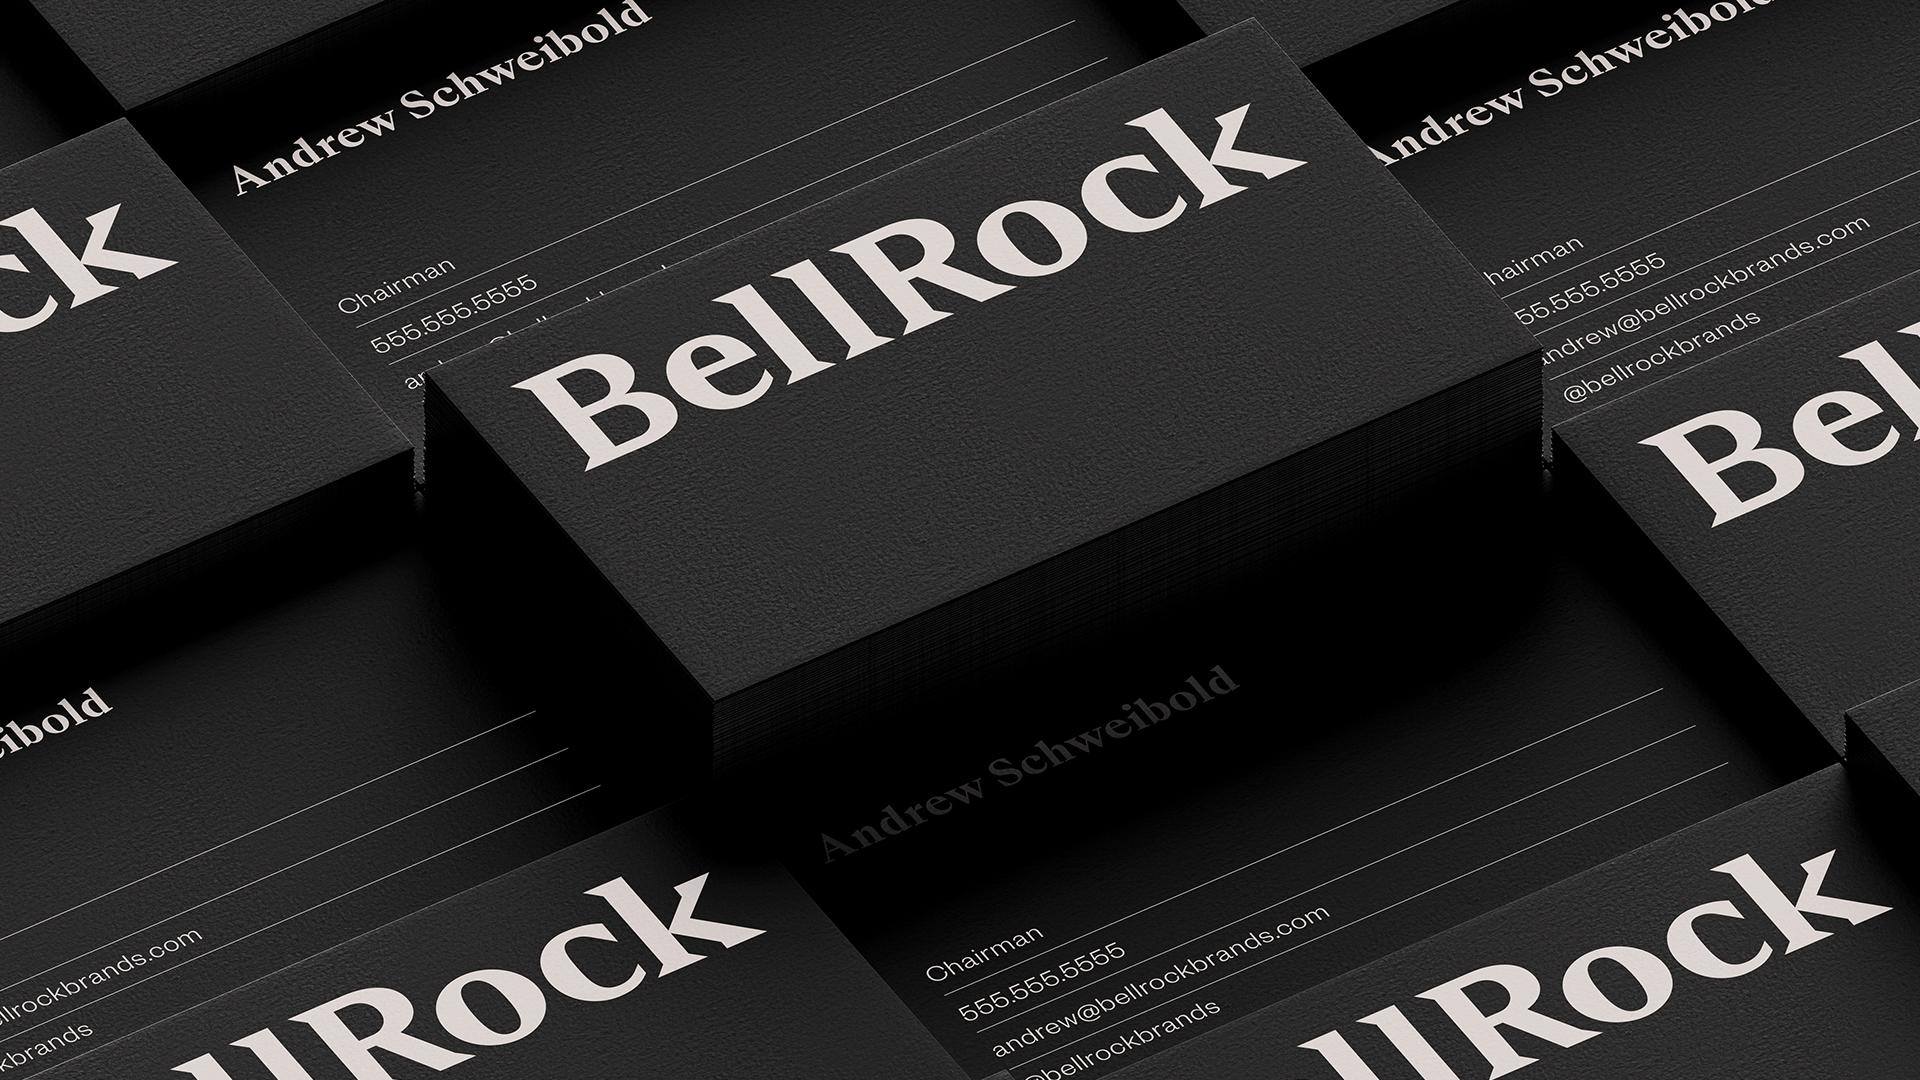 BellRock-08-Business-Card